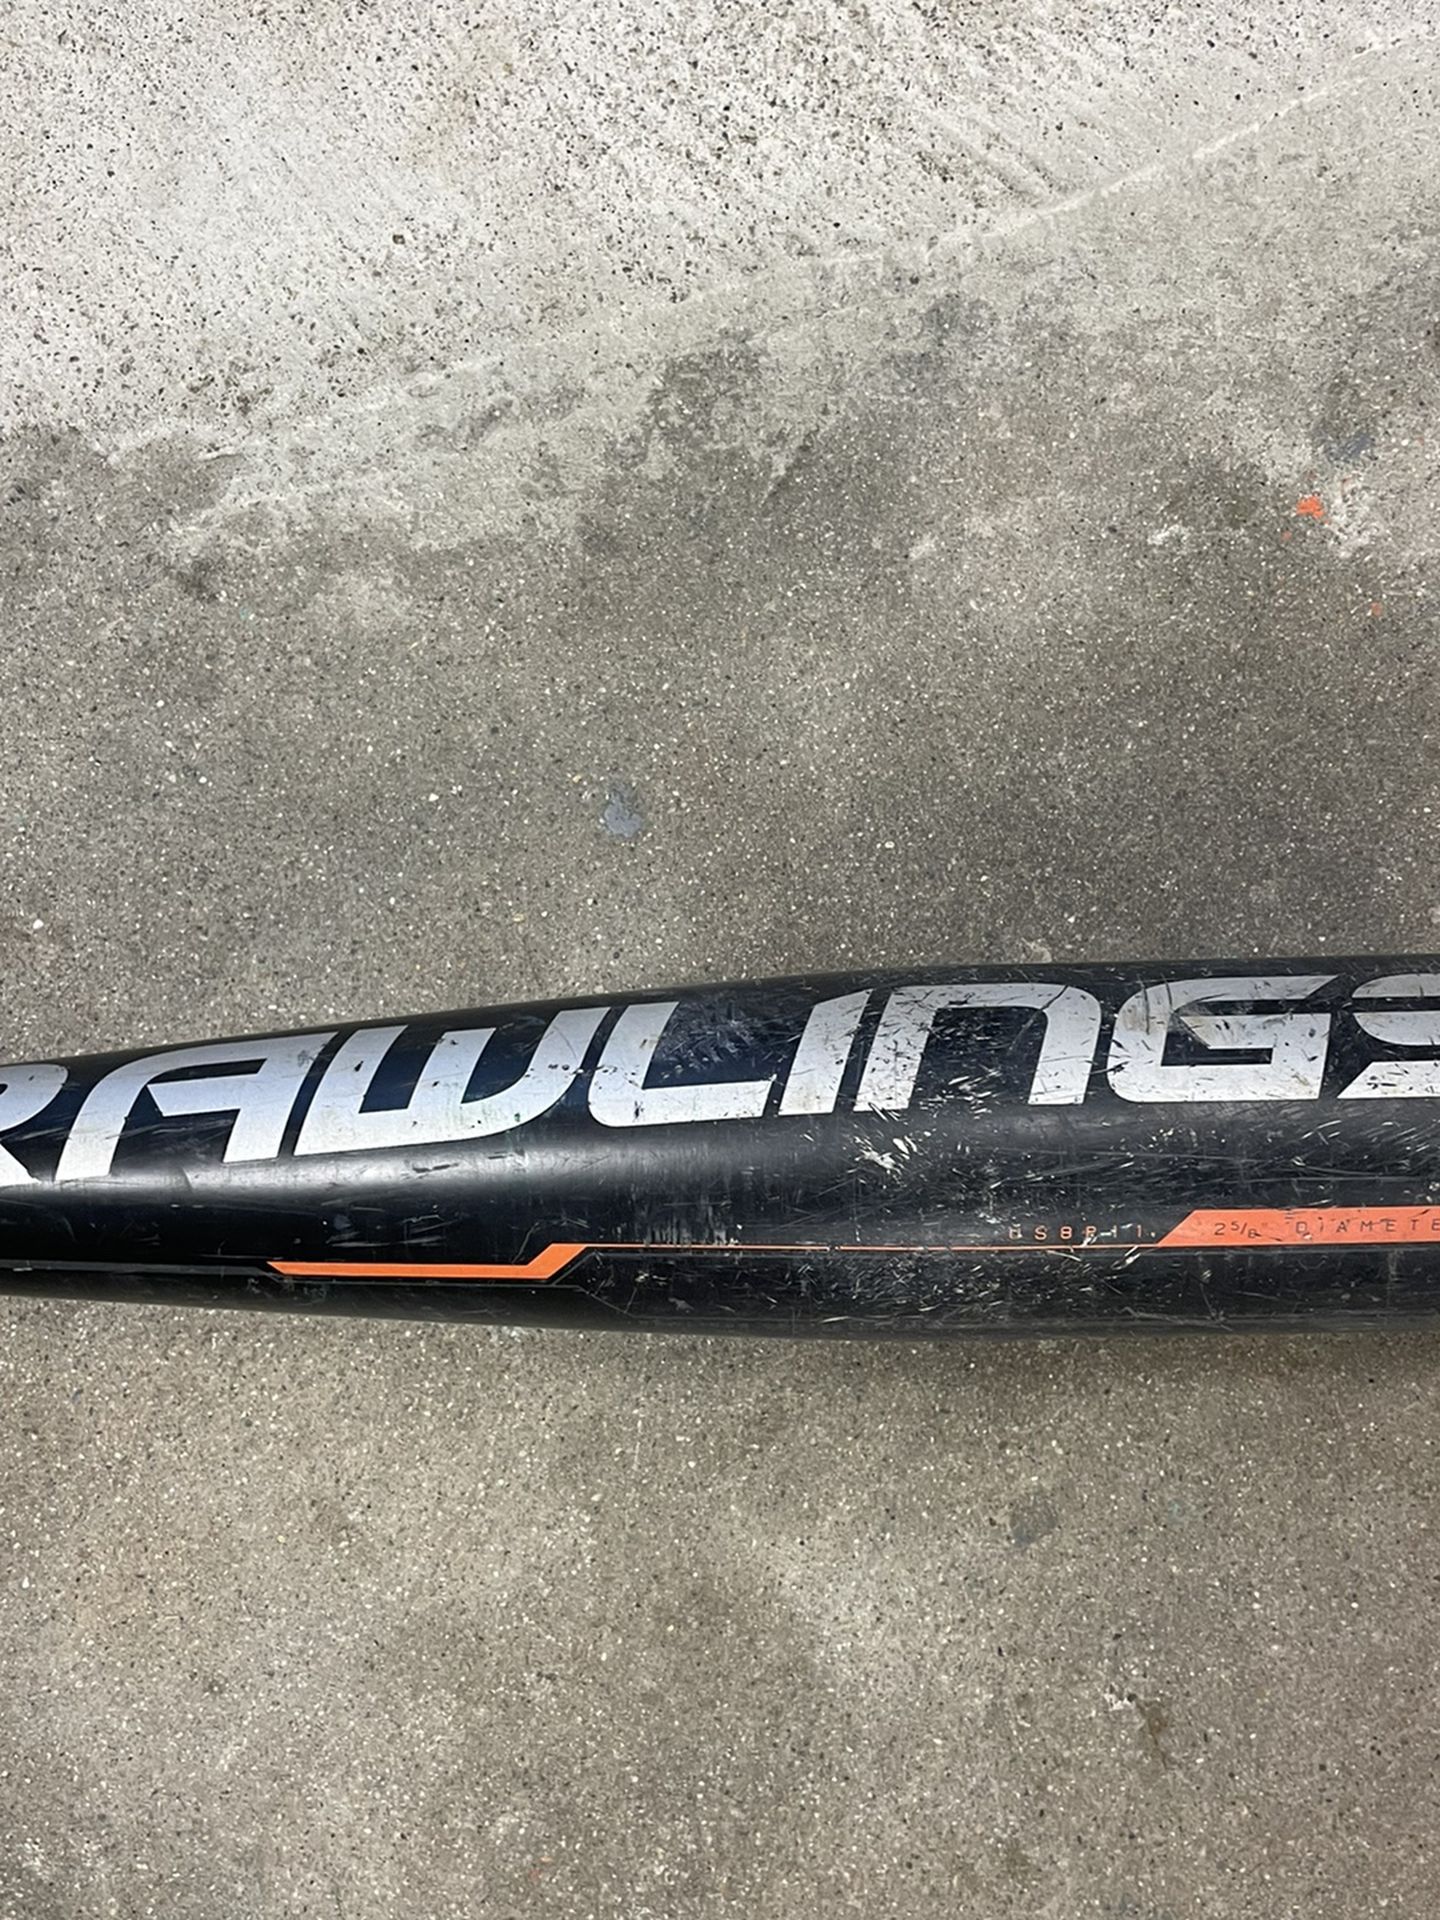 Rawlings baseball Bat